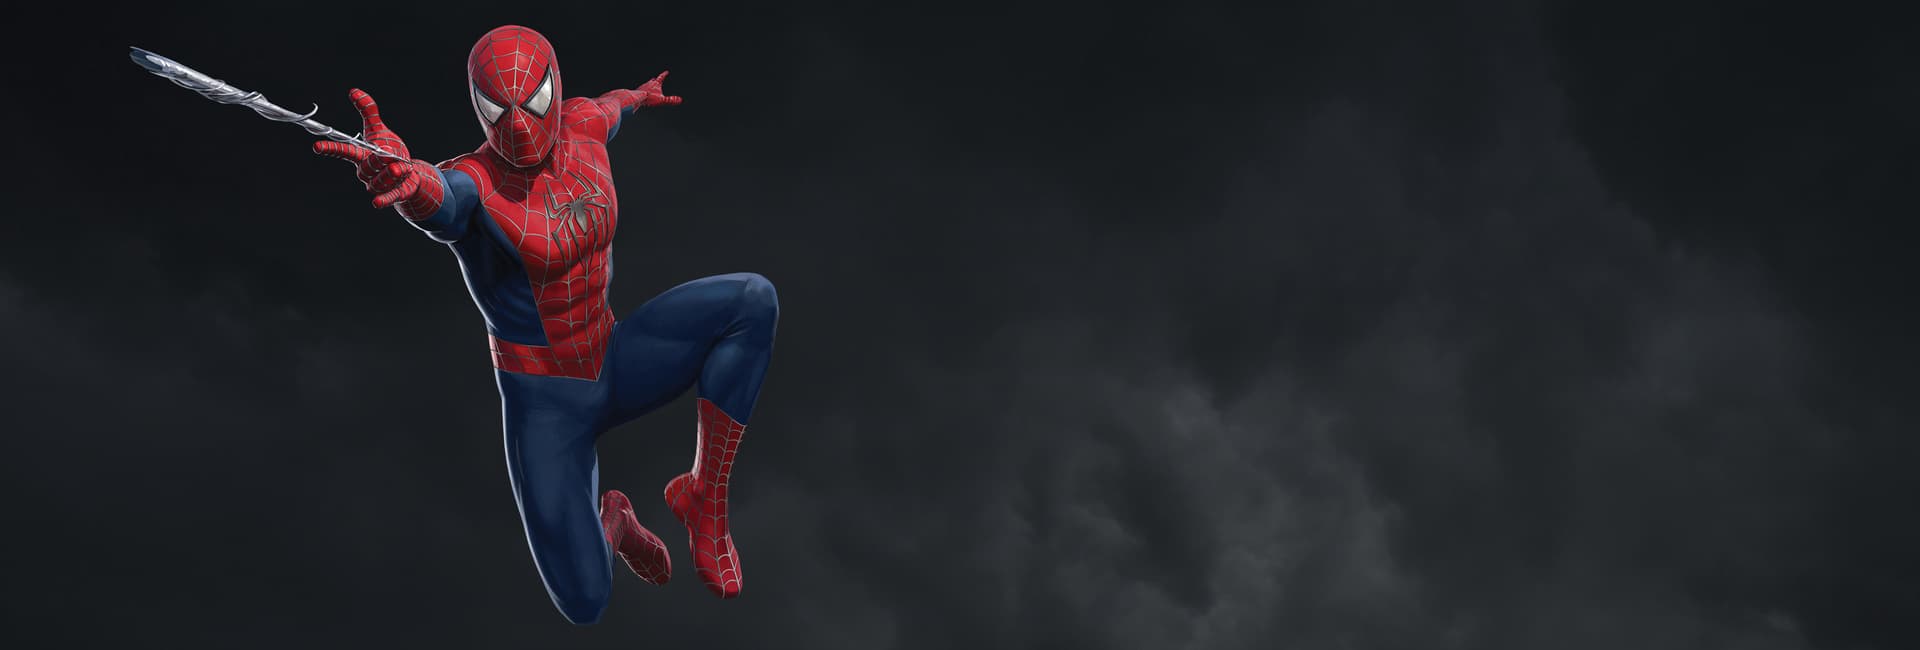 Friendly Neighborhood Spider-Man (Peter Parker) Spider-Man 2